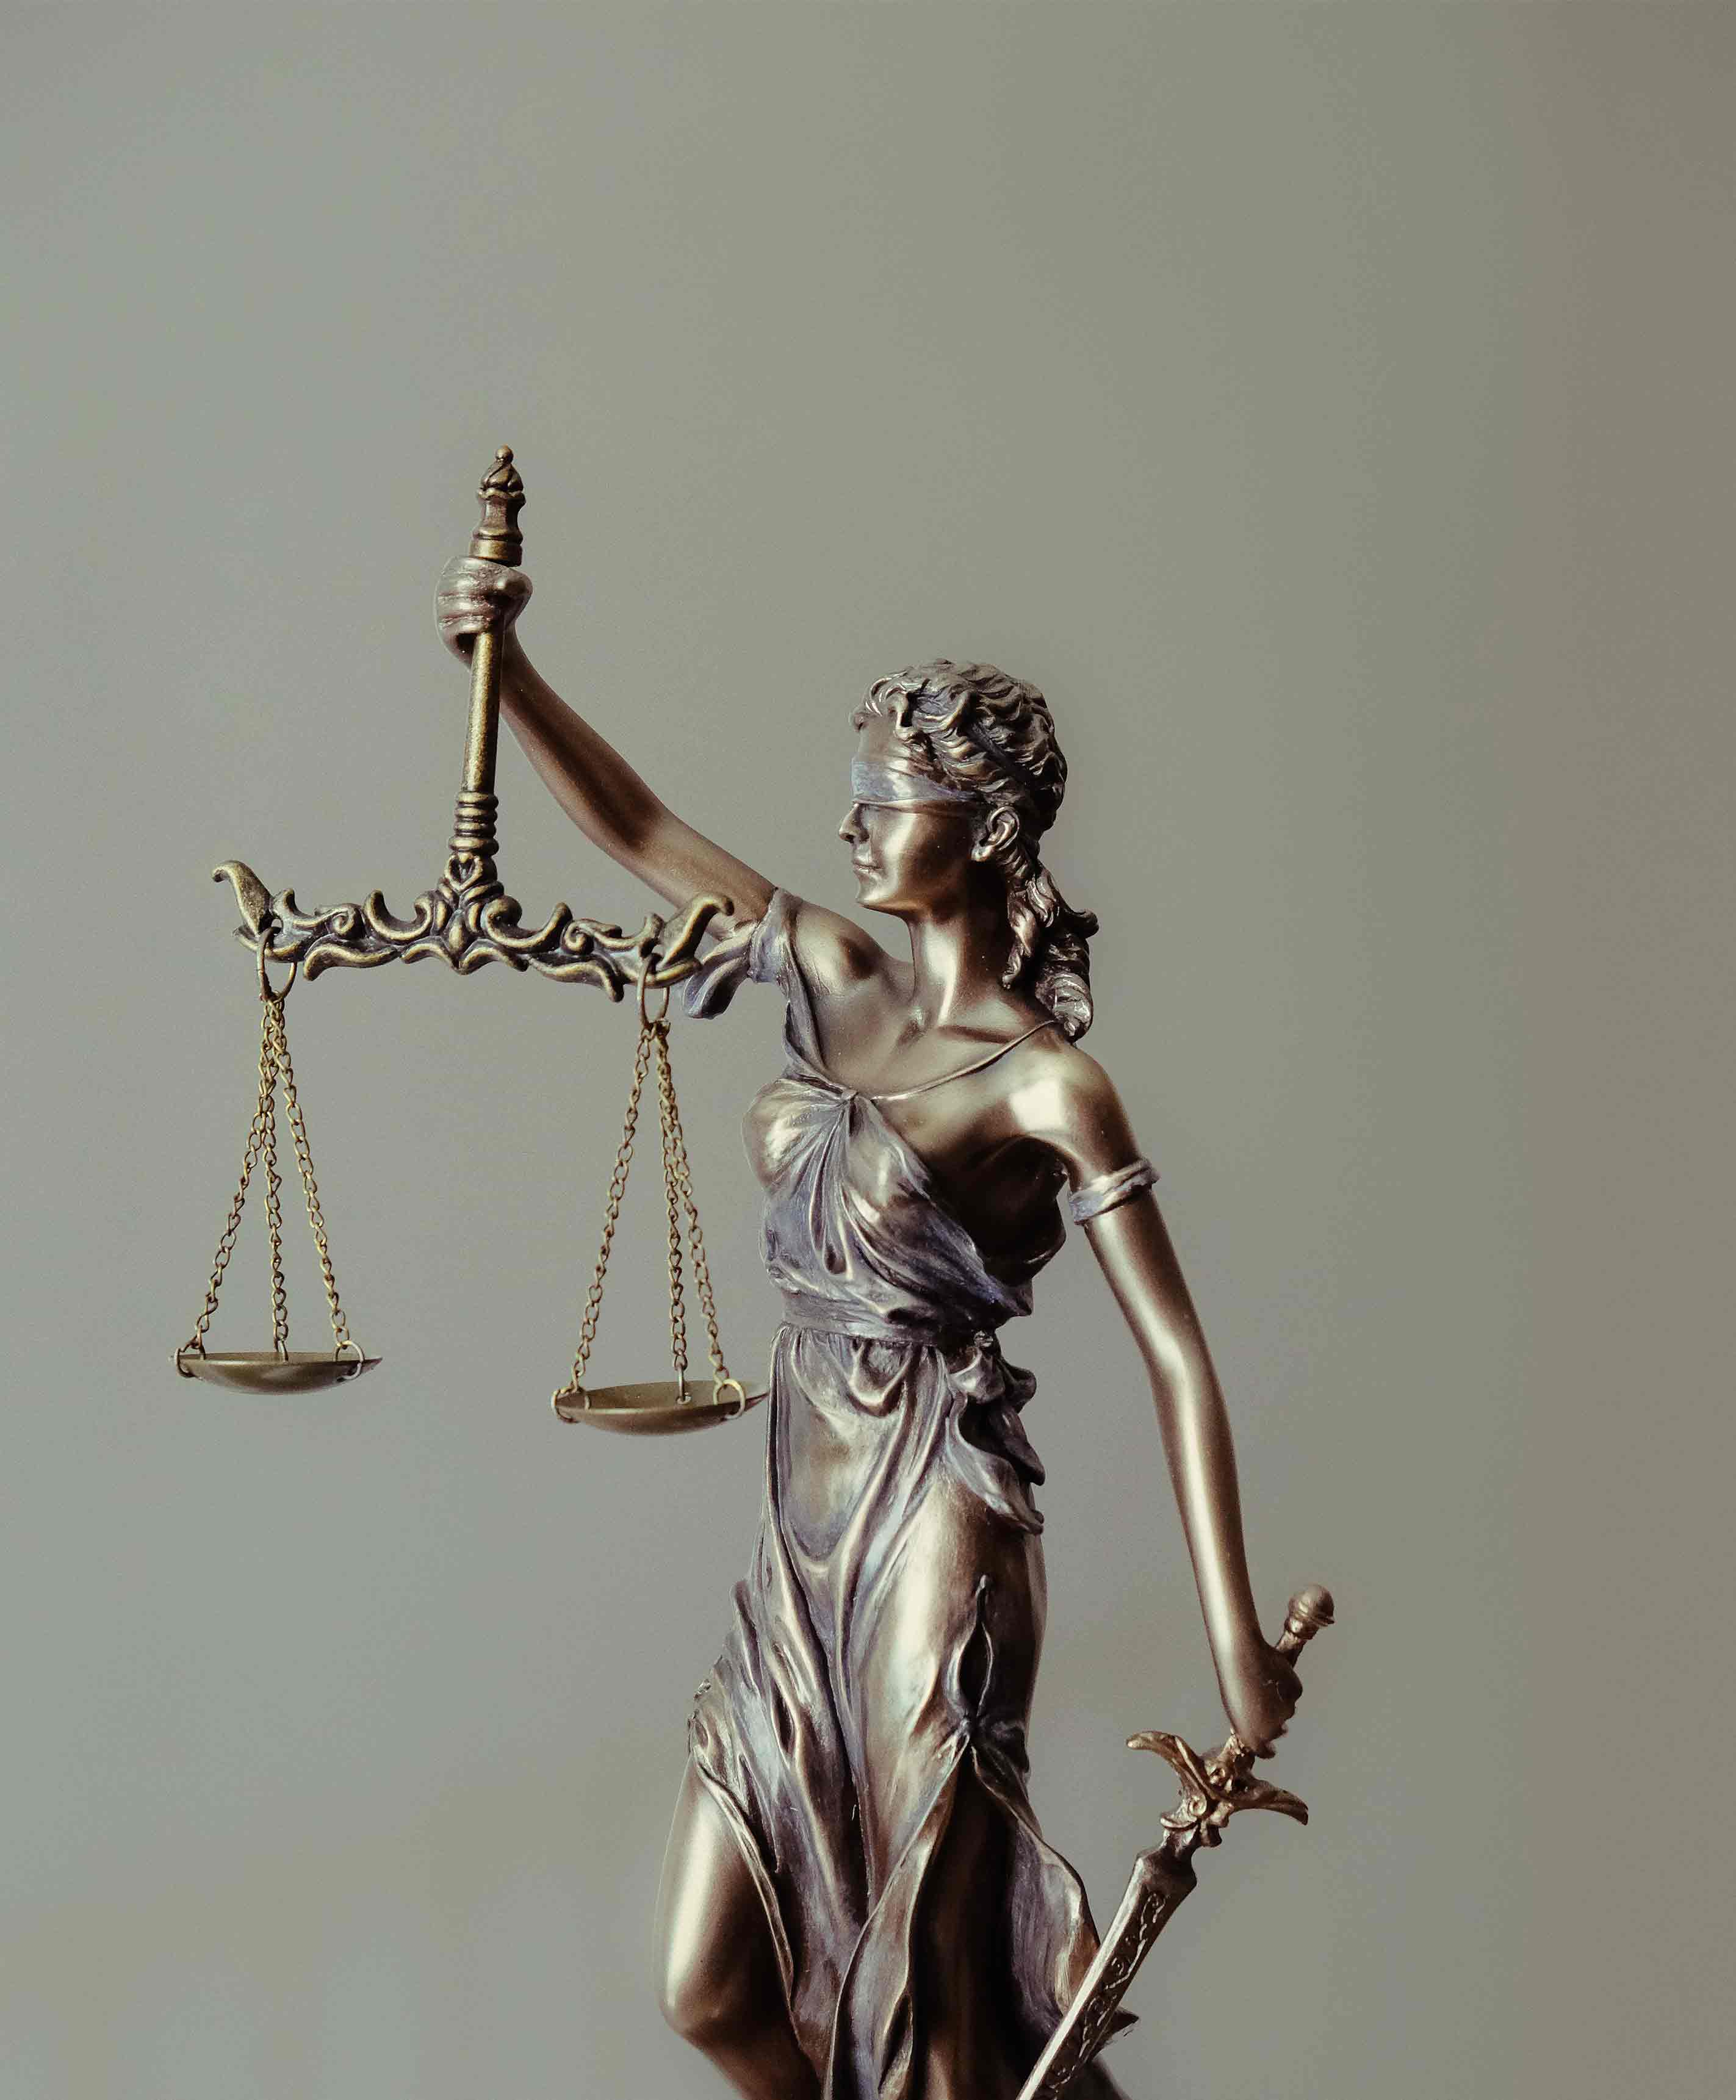 Conviértete en jurista estudidando Máster en Derecho Penal